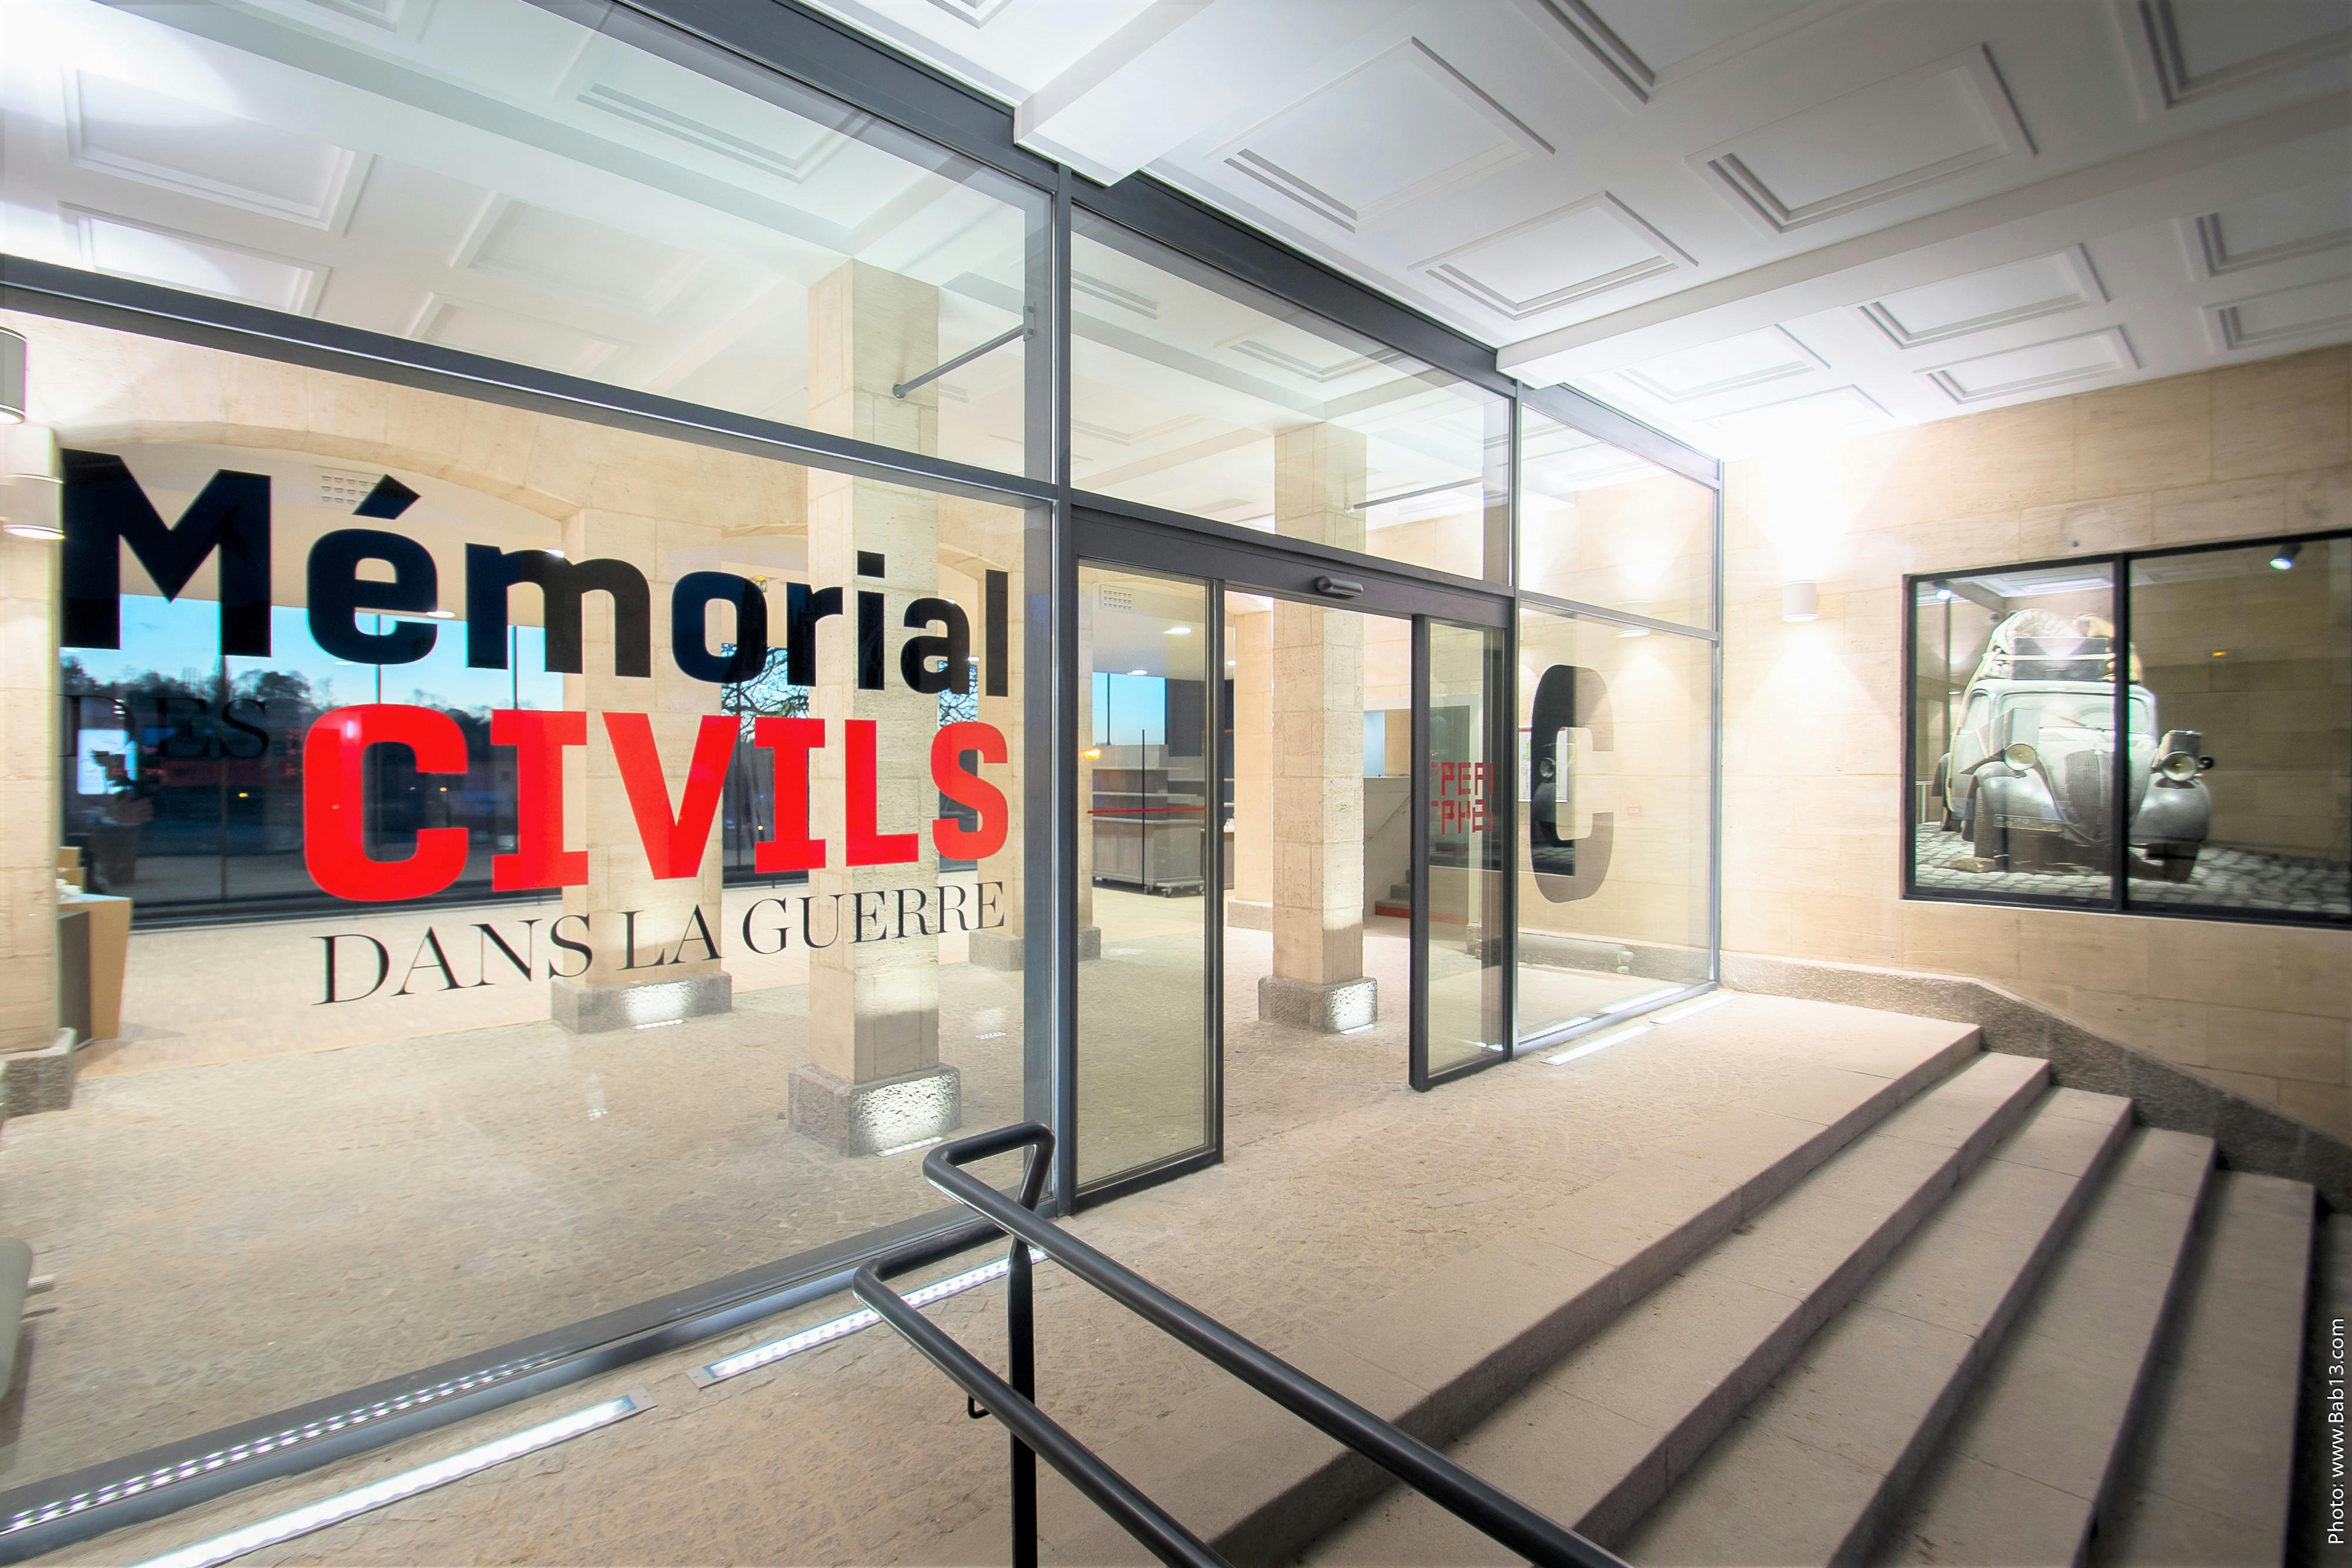 Billets d'entrée au mémorial de Falaise - La Guerre des Civils